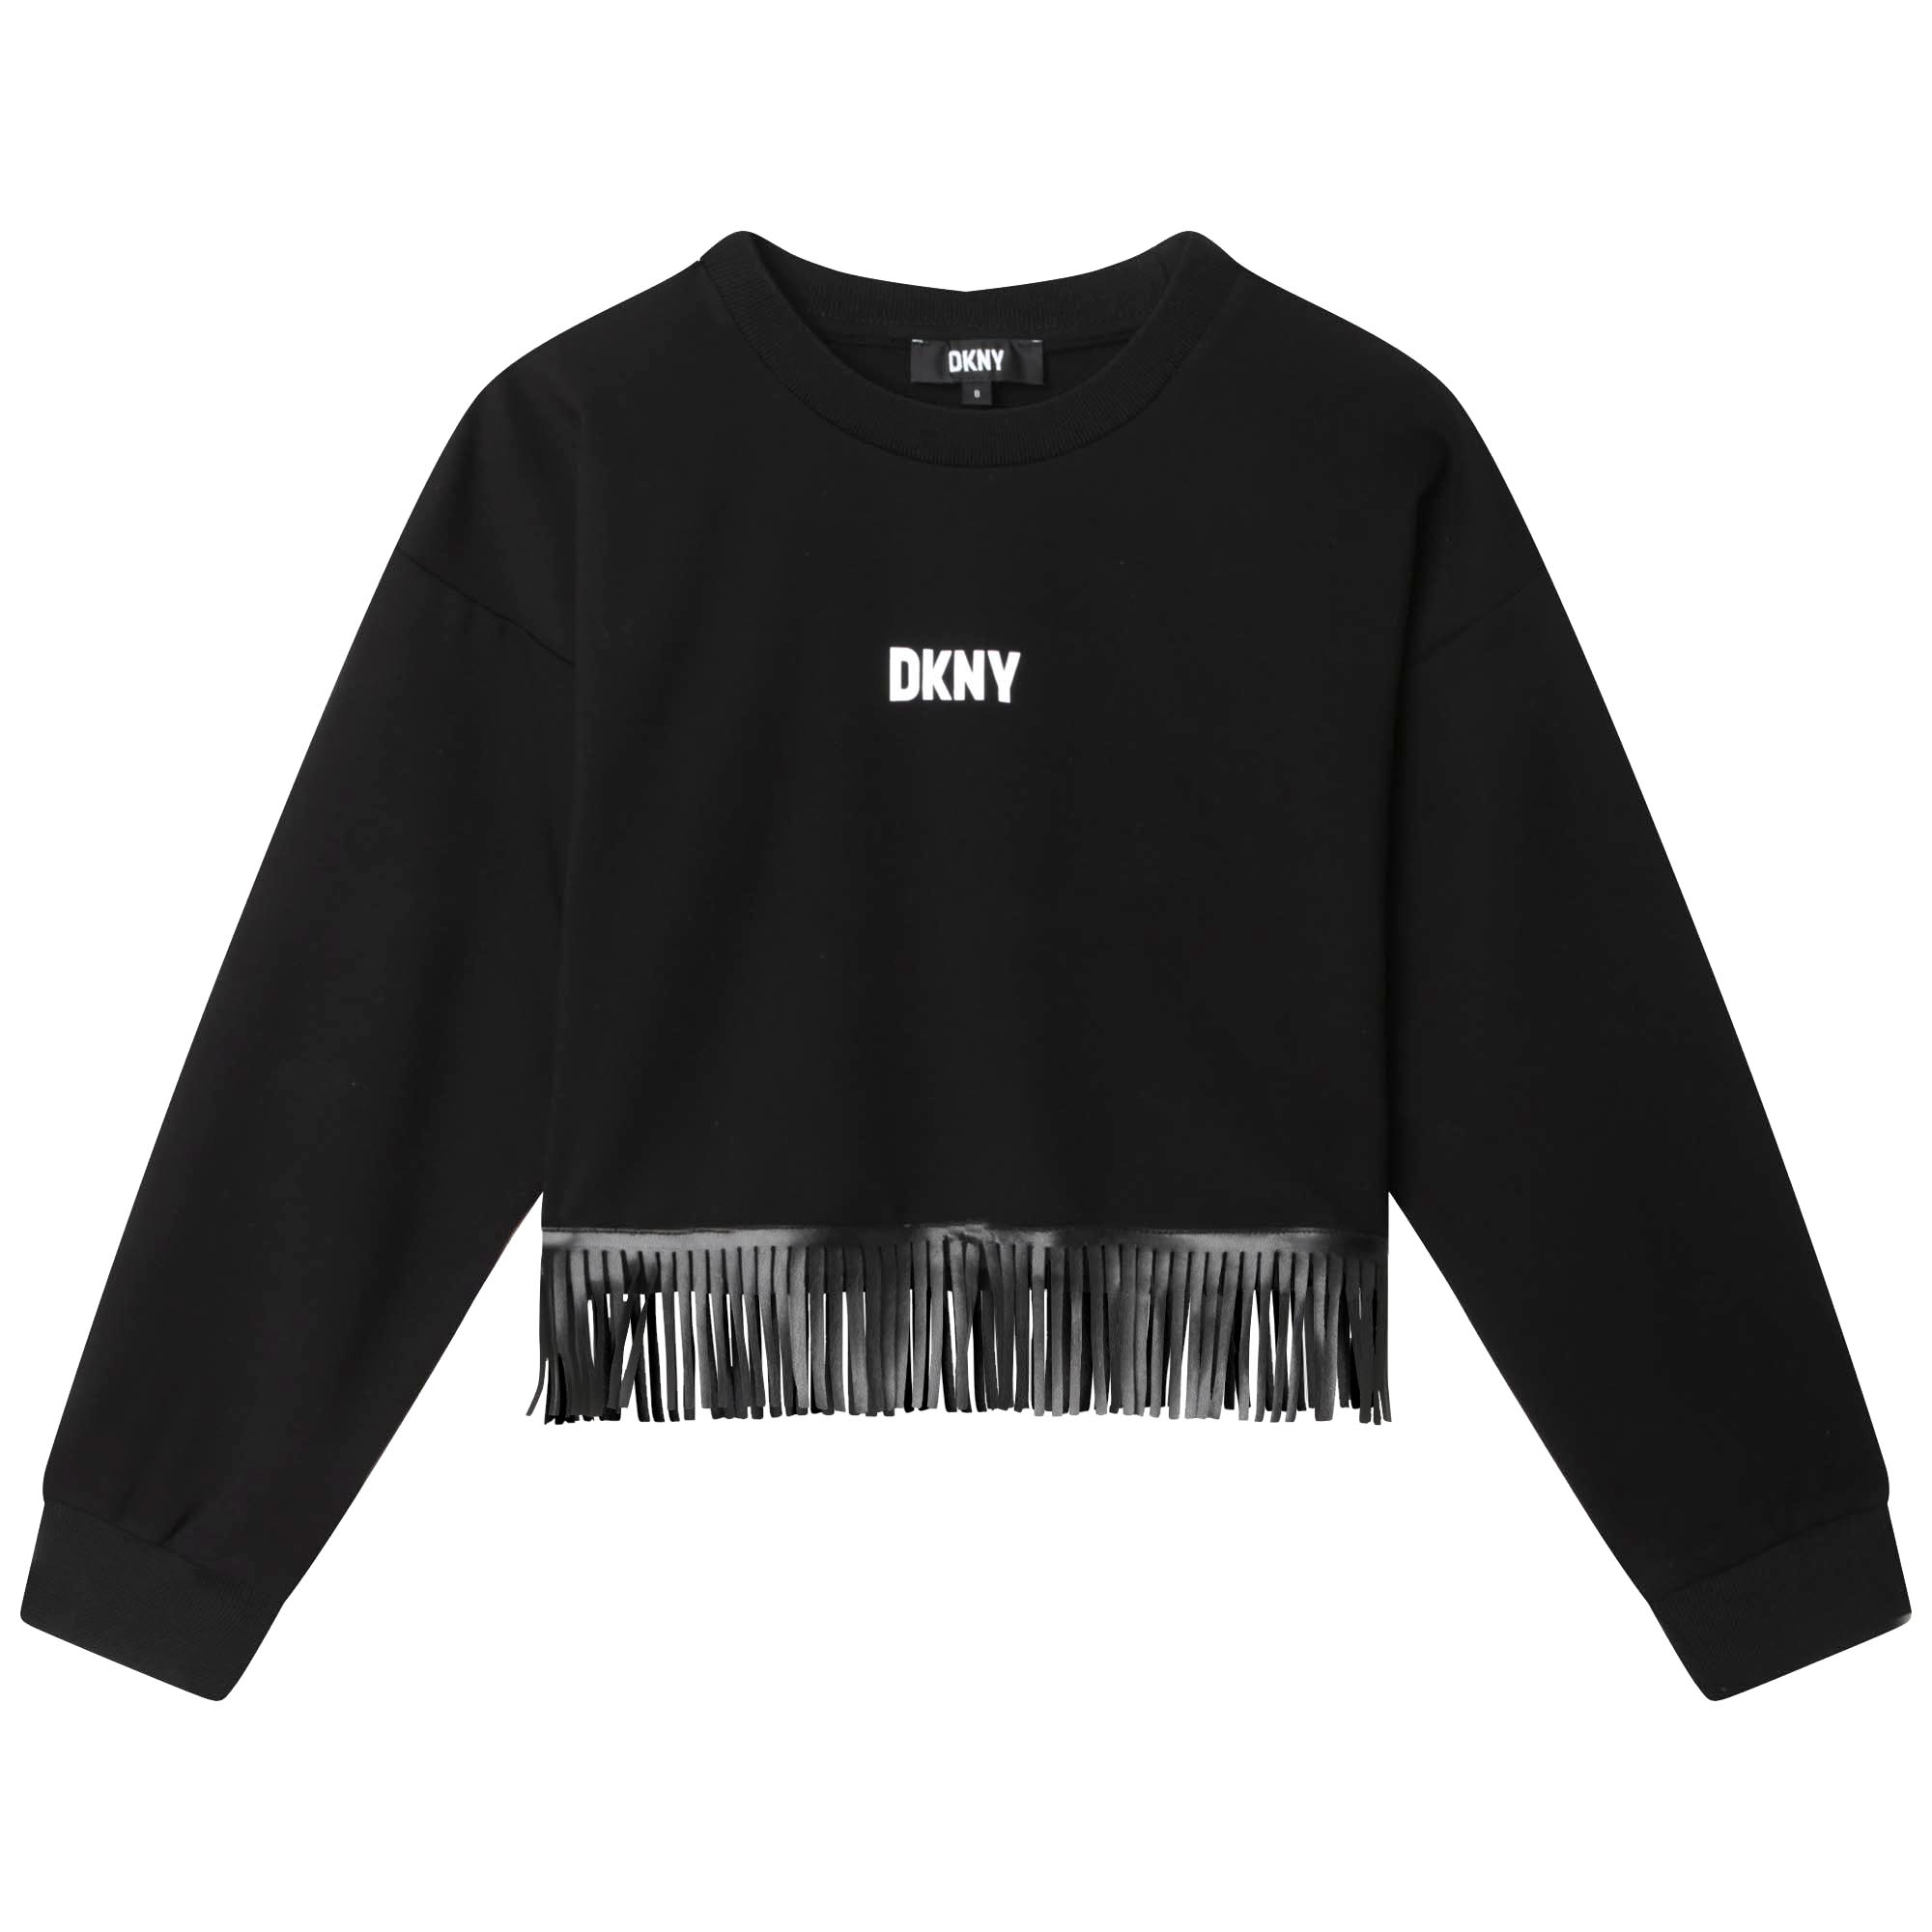 Tassled sweatshirt DKNY for GIRL